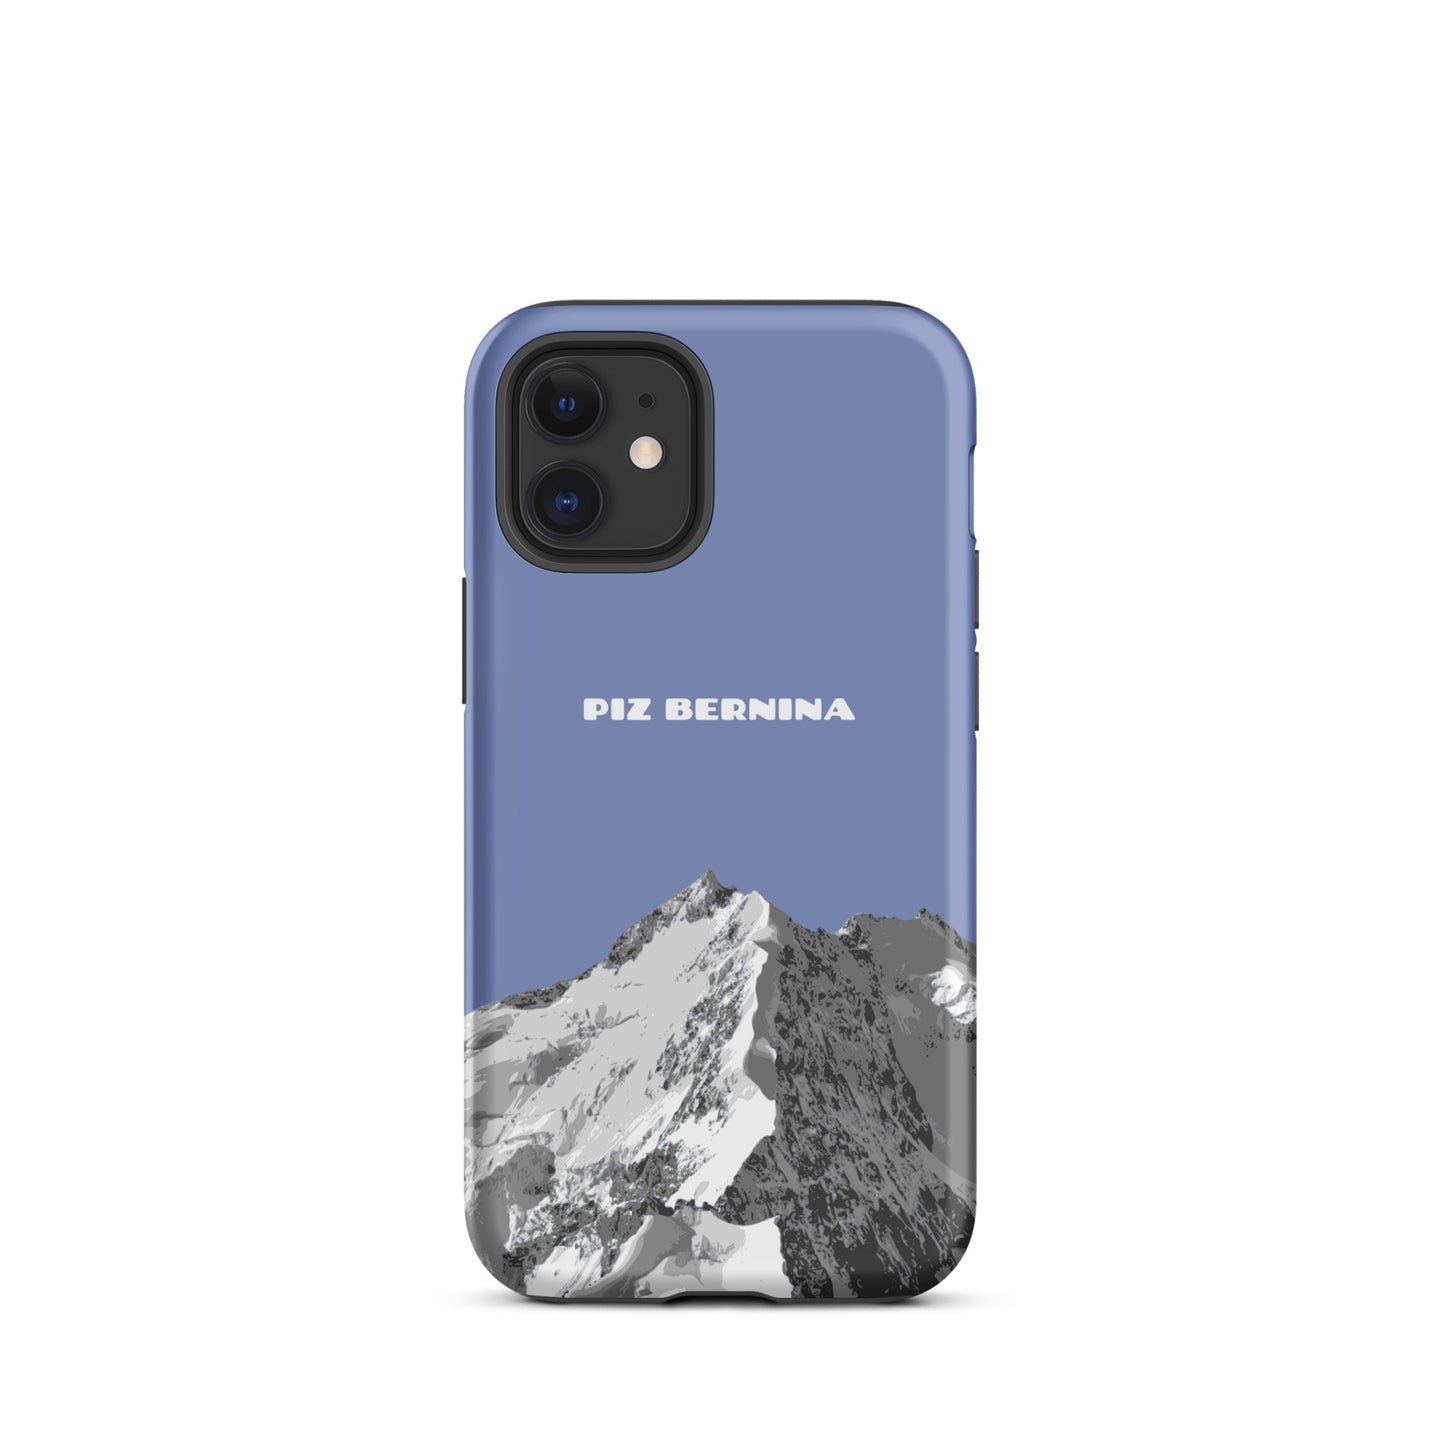 Hülle für das iPhone 12 Mini von Apple in der Farbe Pastellblau, dass den Piz Bernina in Graubünden zeigt.